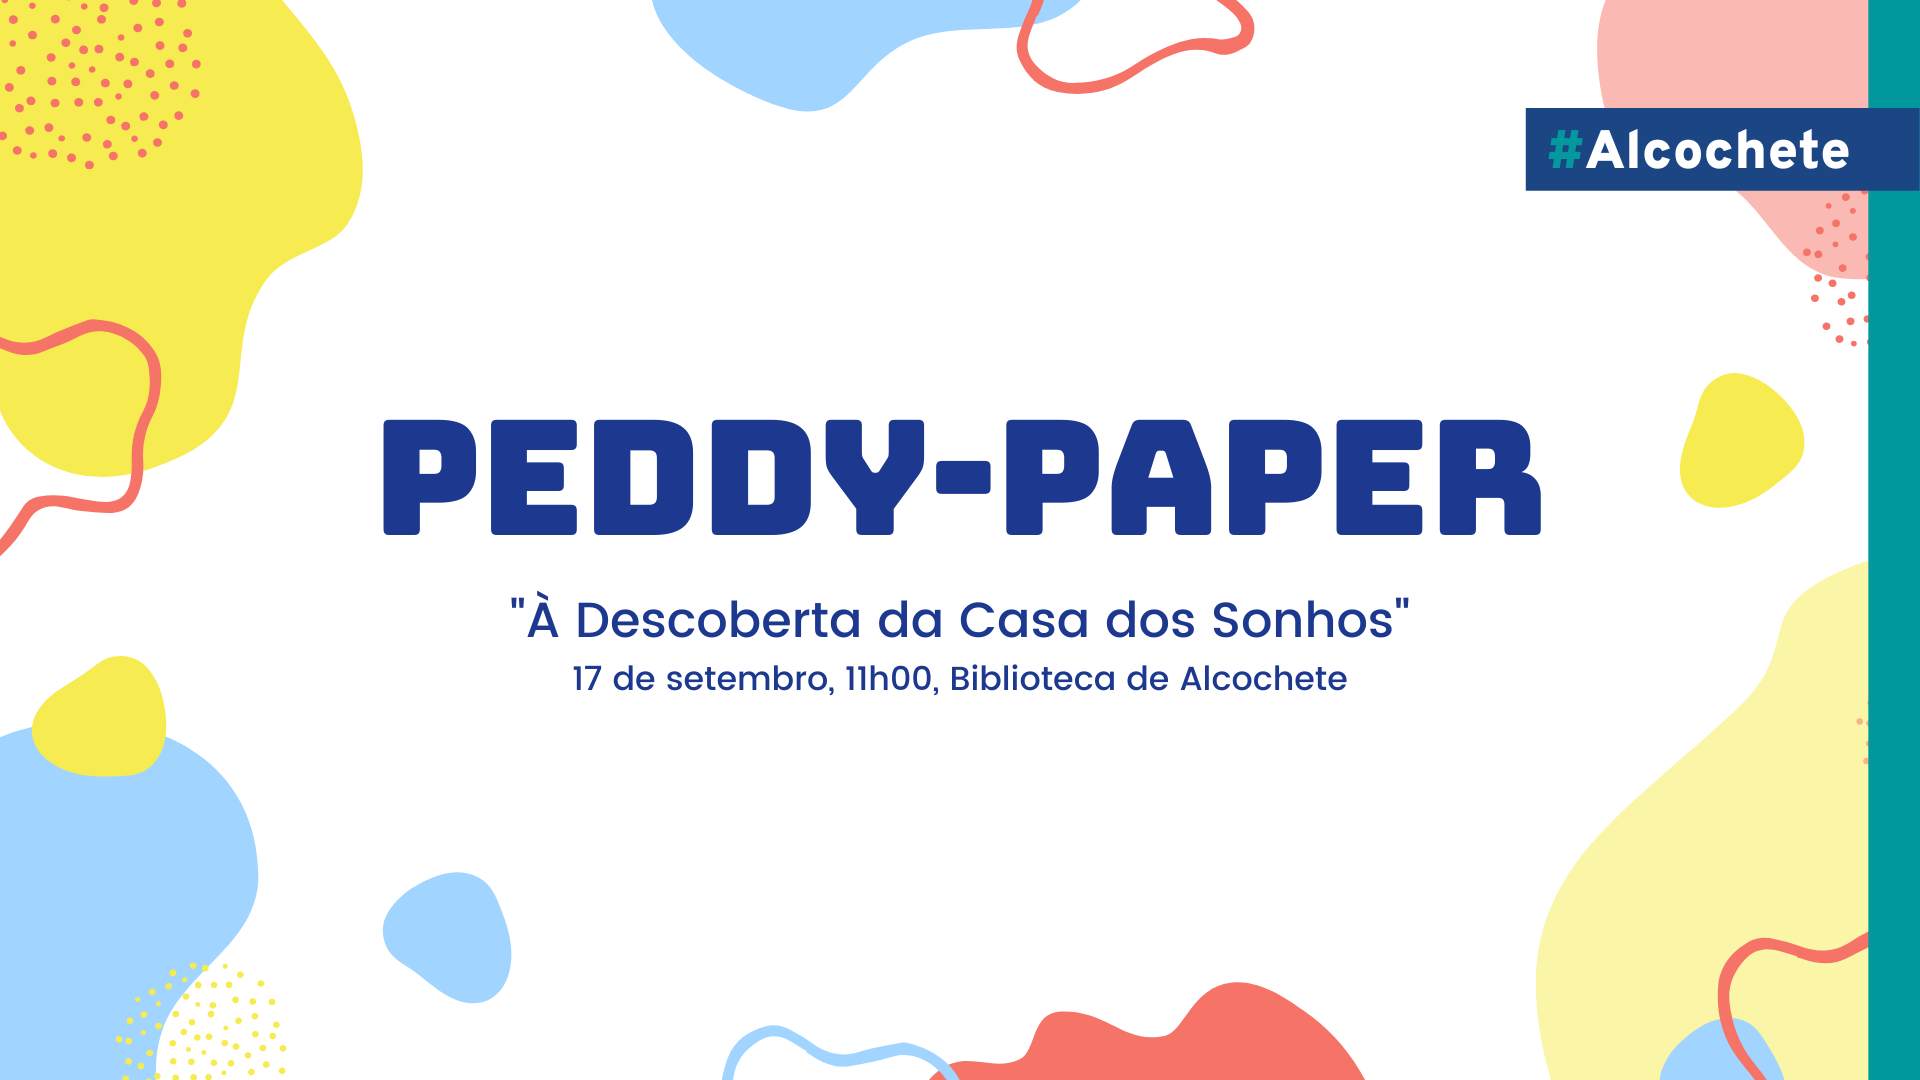 Peddypaper “À Descoberta da Casa dos Sonhos”